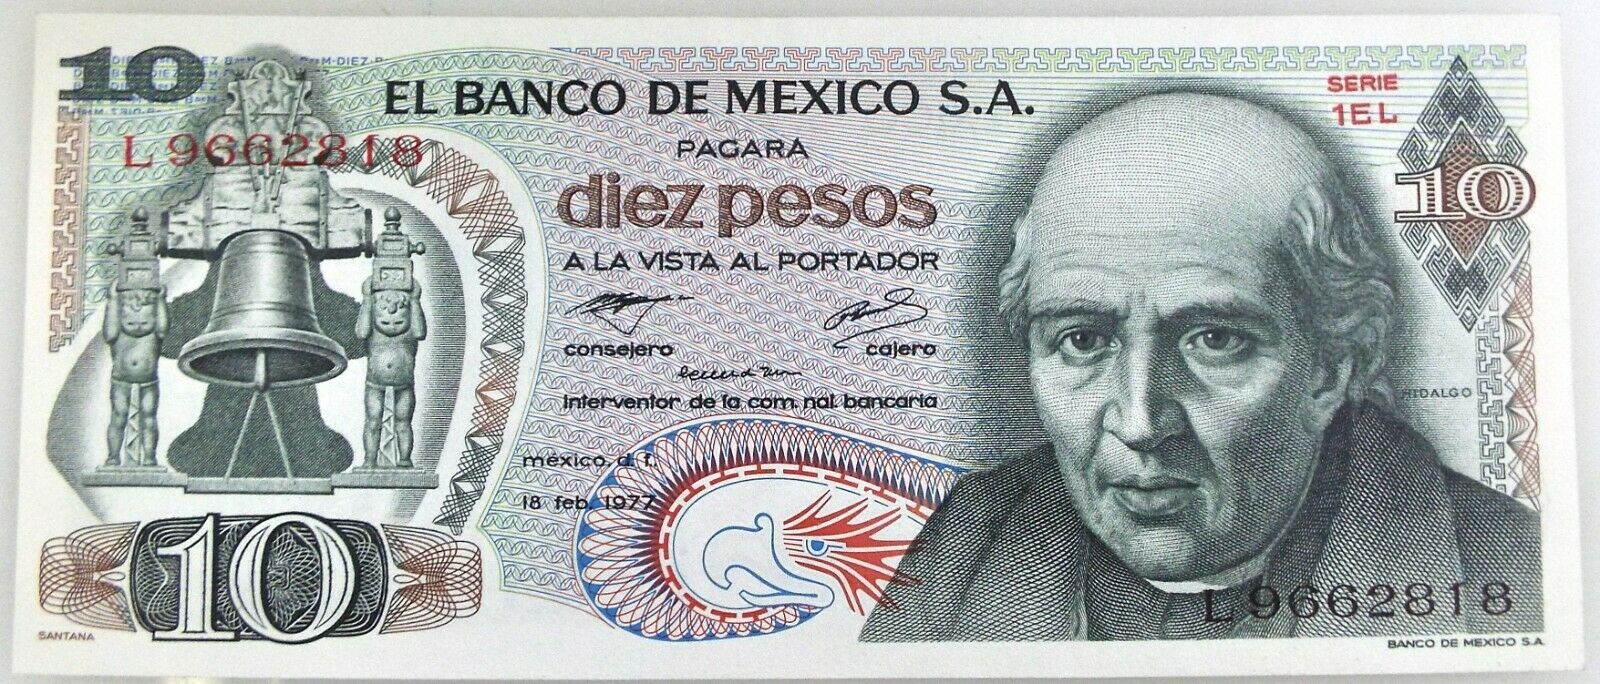 1977 - El Banco de Mexico - 10 Diez Pesos UNC Bill - Serie 1EL ~#3954